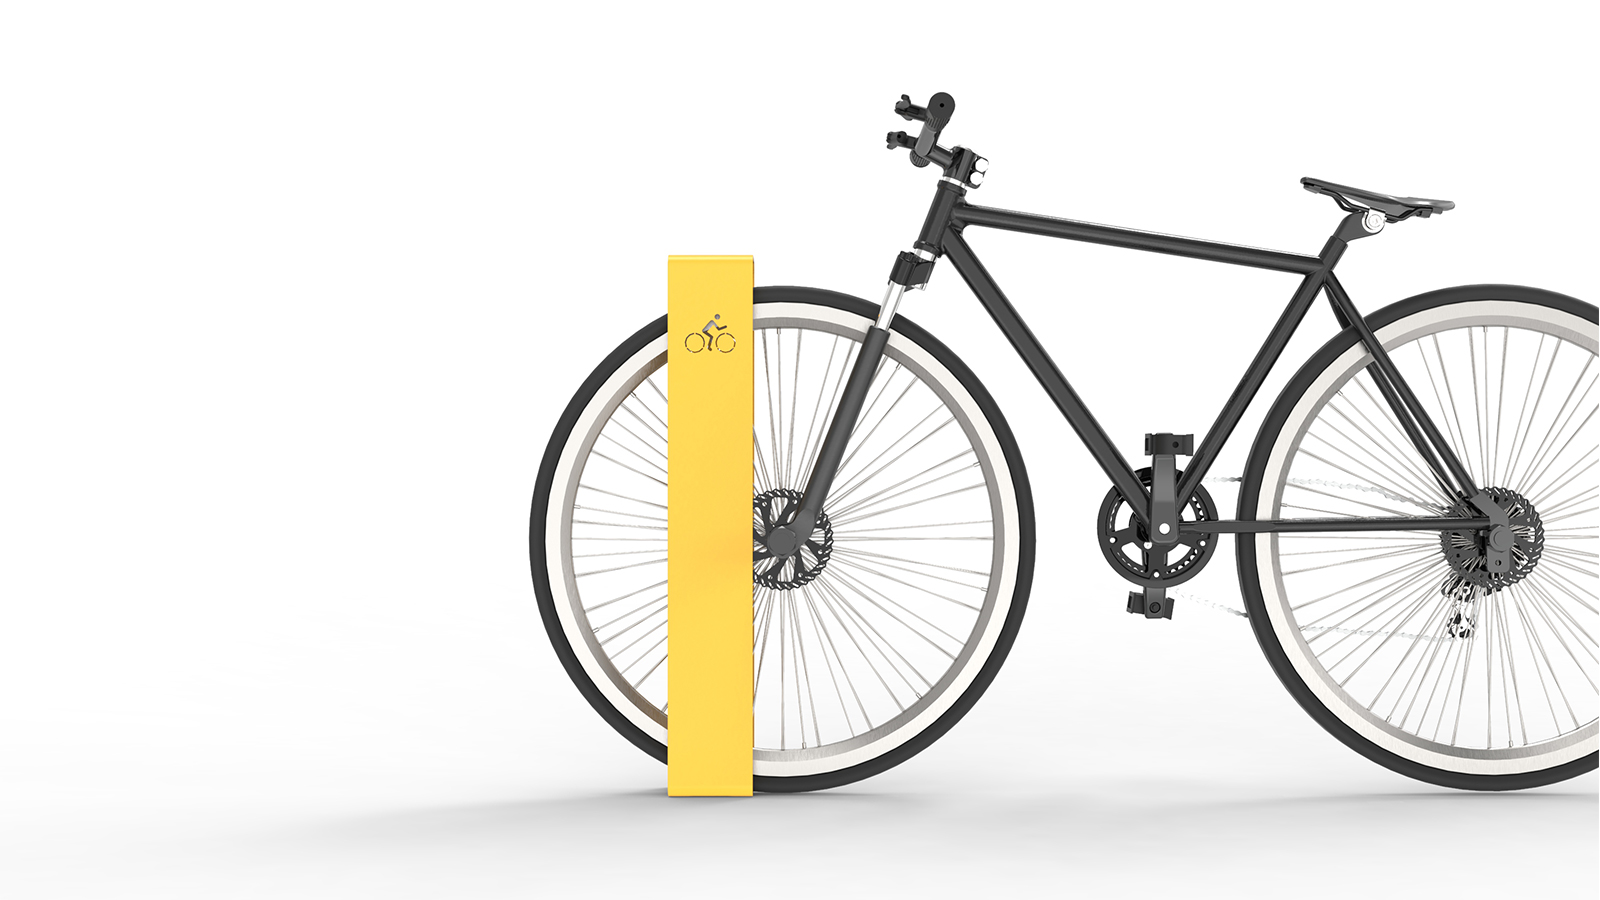 Bicicletero metálico para espacios públicos Nomen